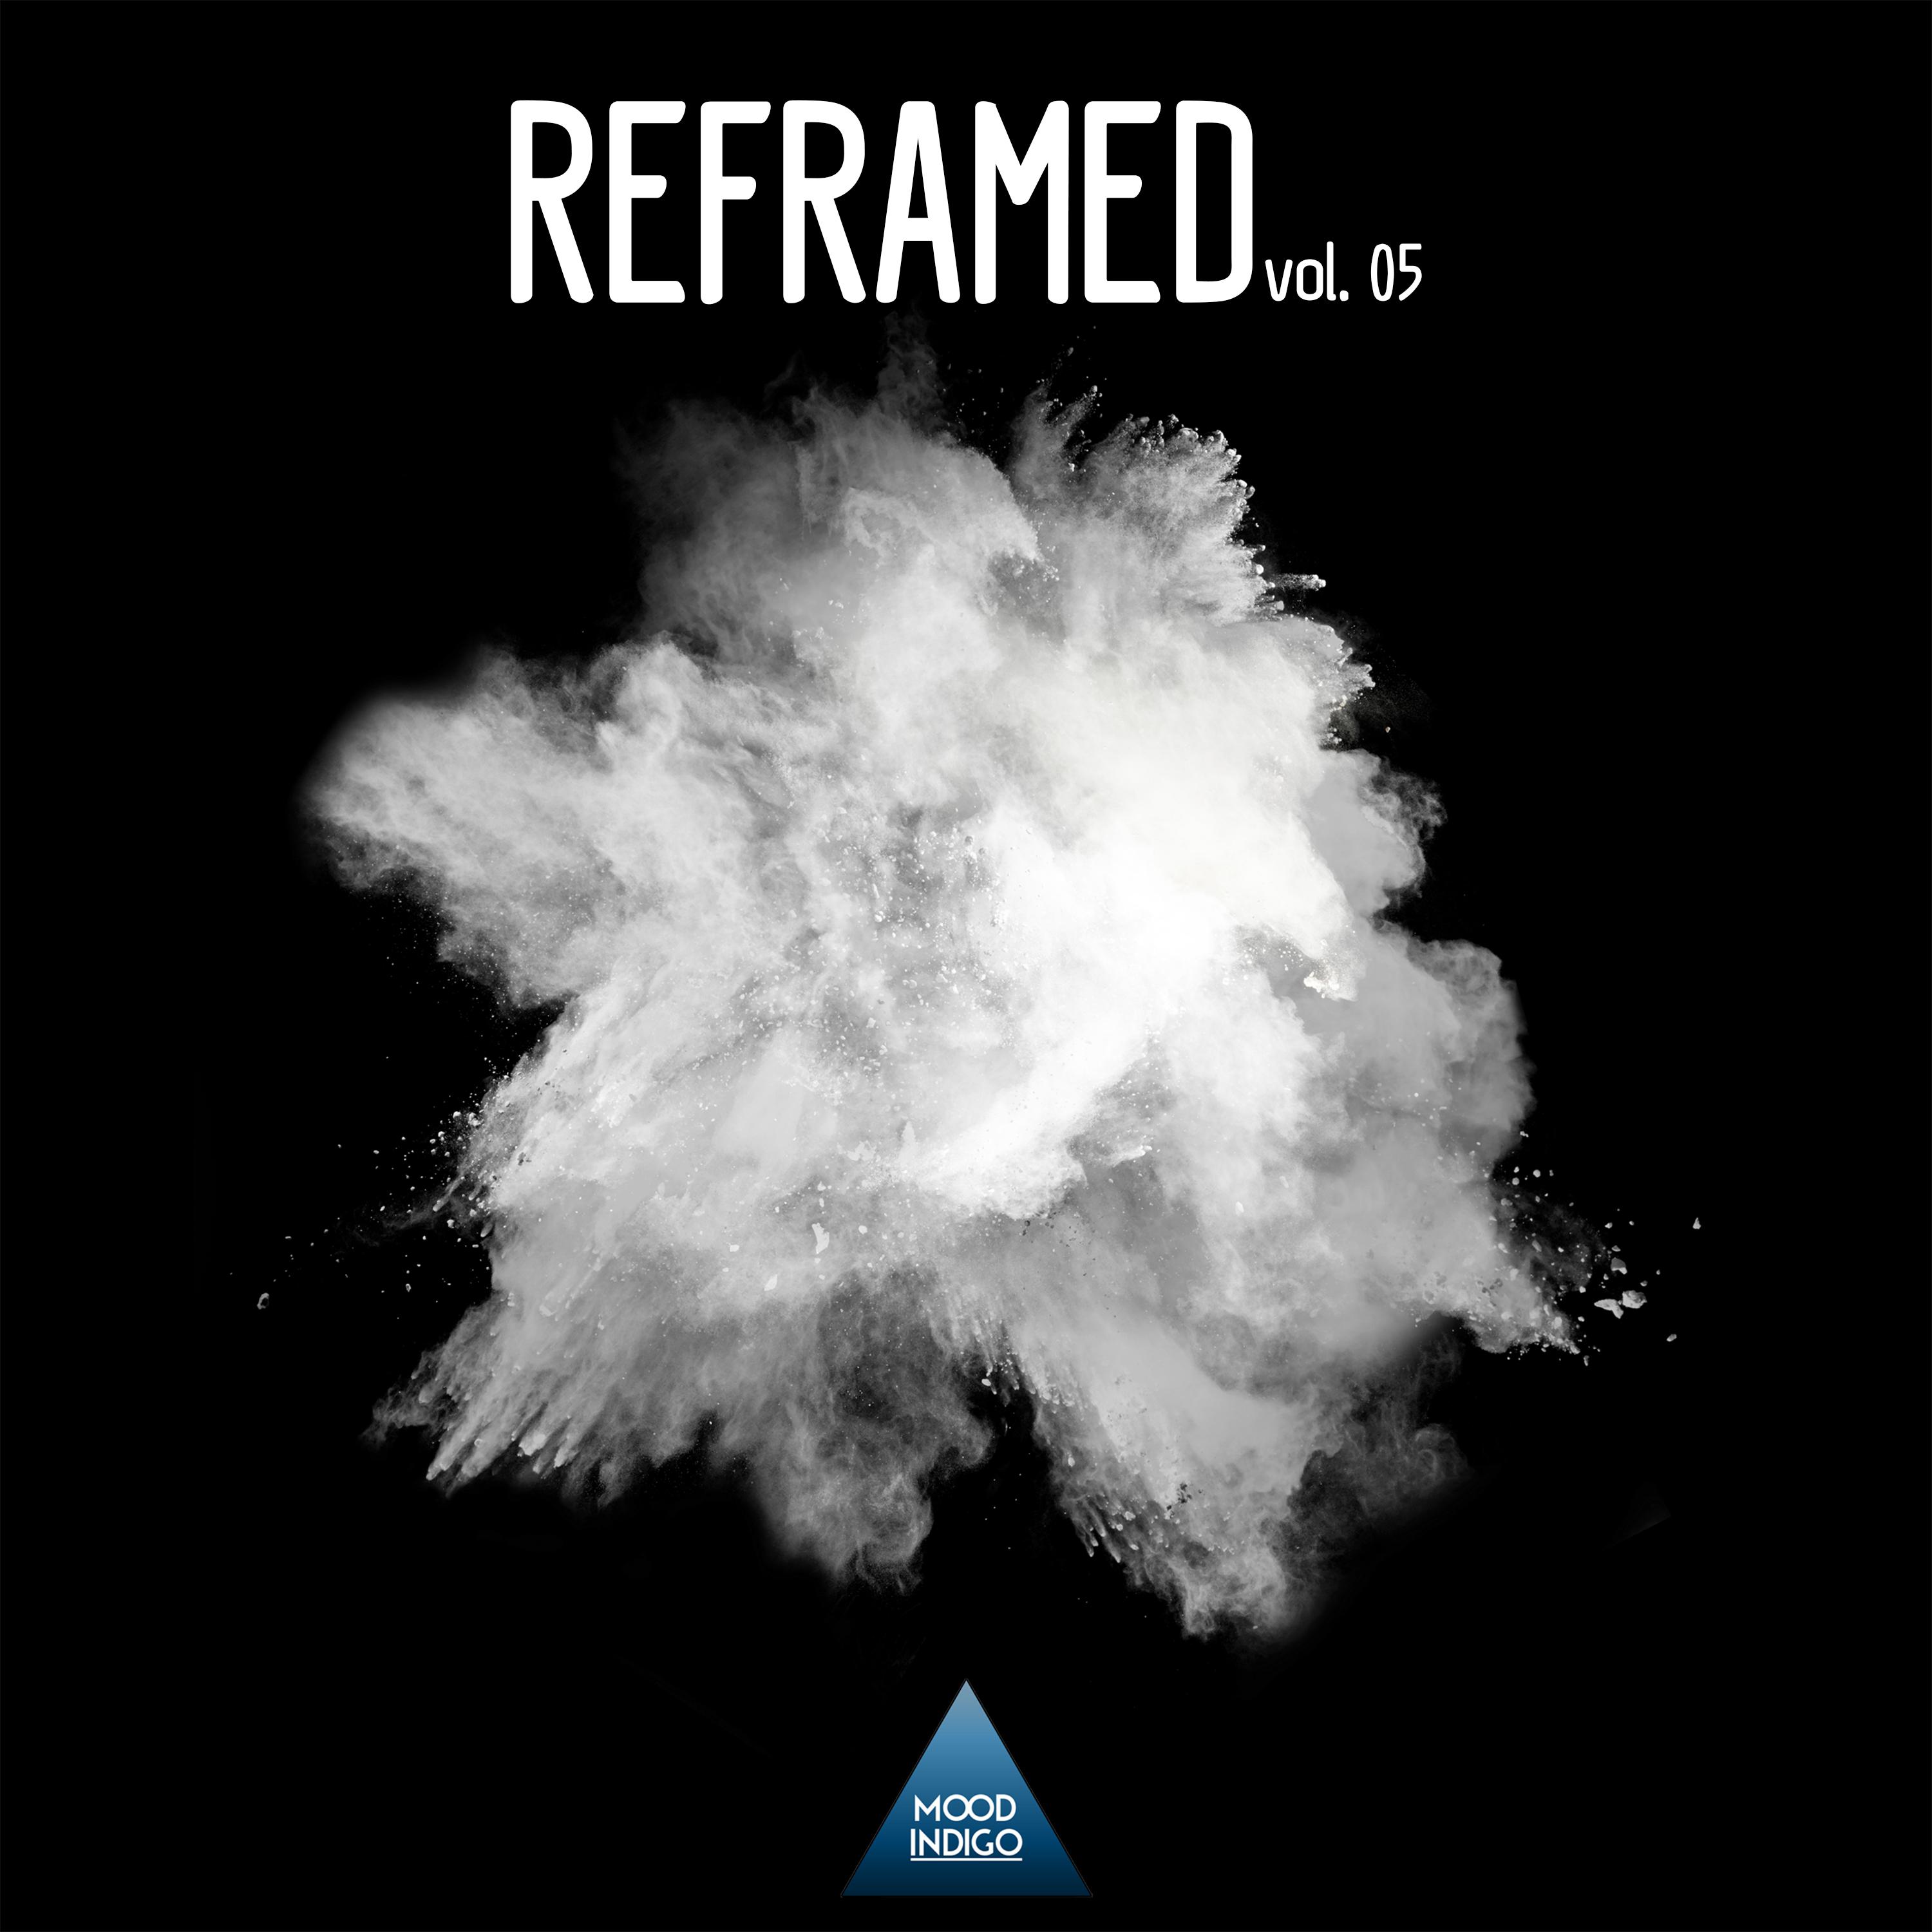 Reframed, Vol. 05